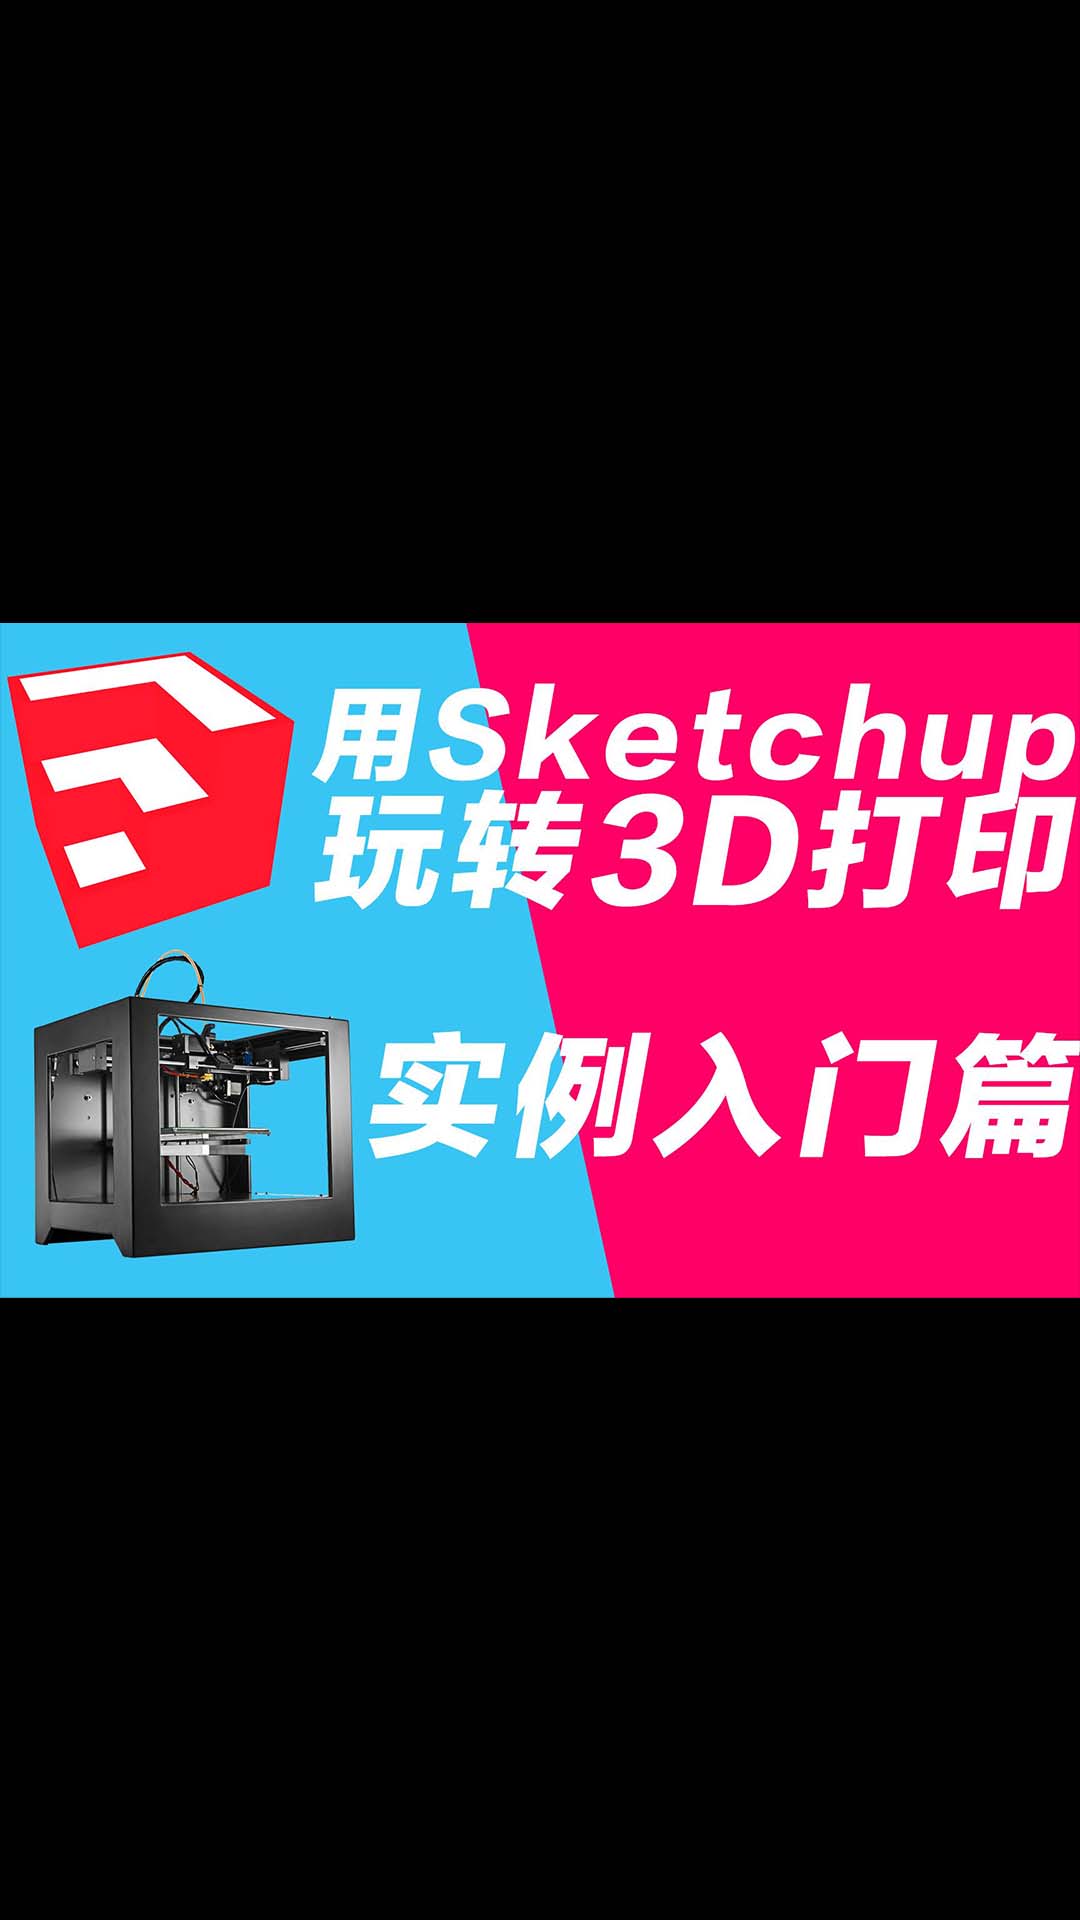 玩轉3D打印機系列 用sketchup做3D打印建模 實例入門篇